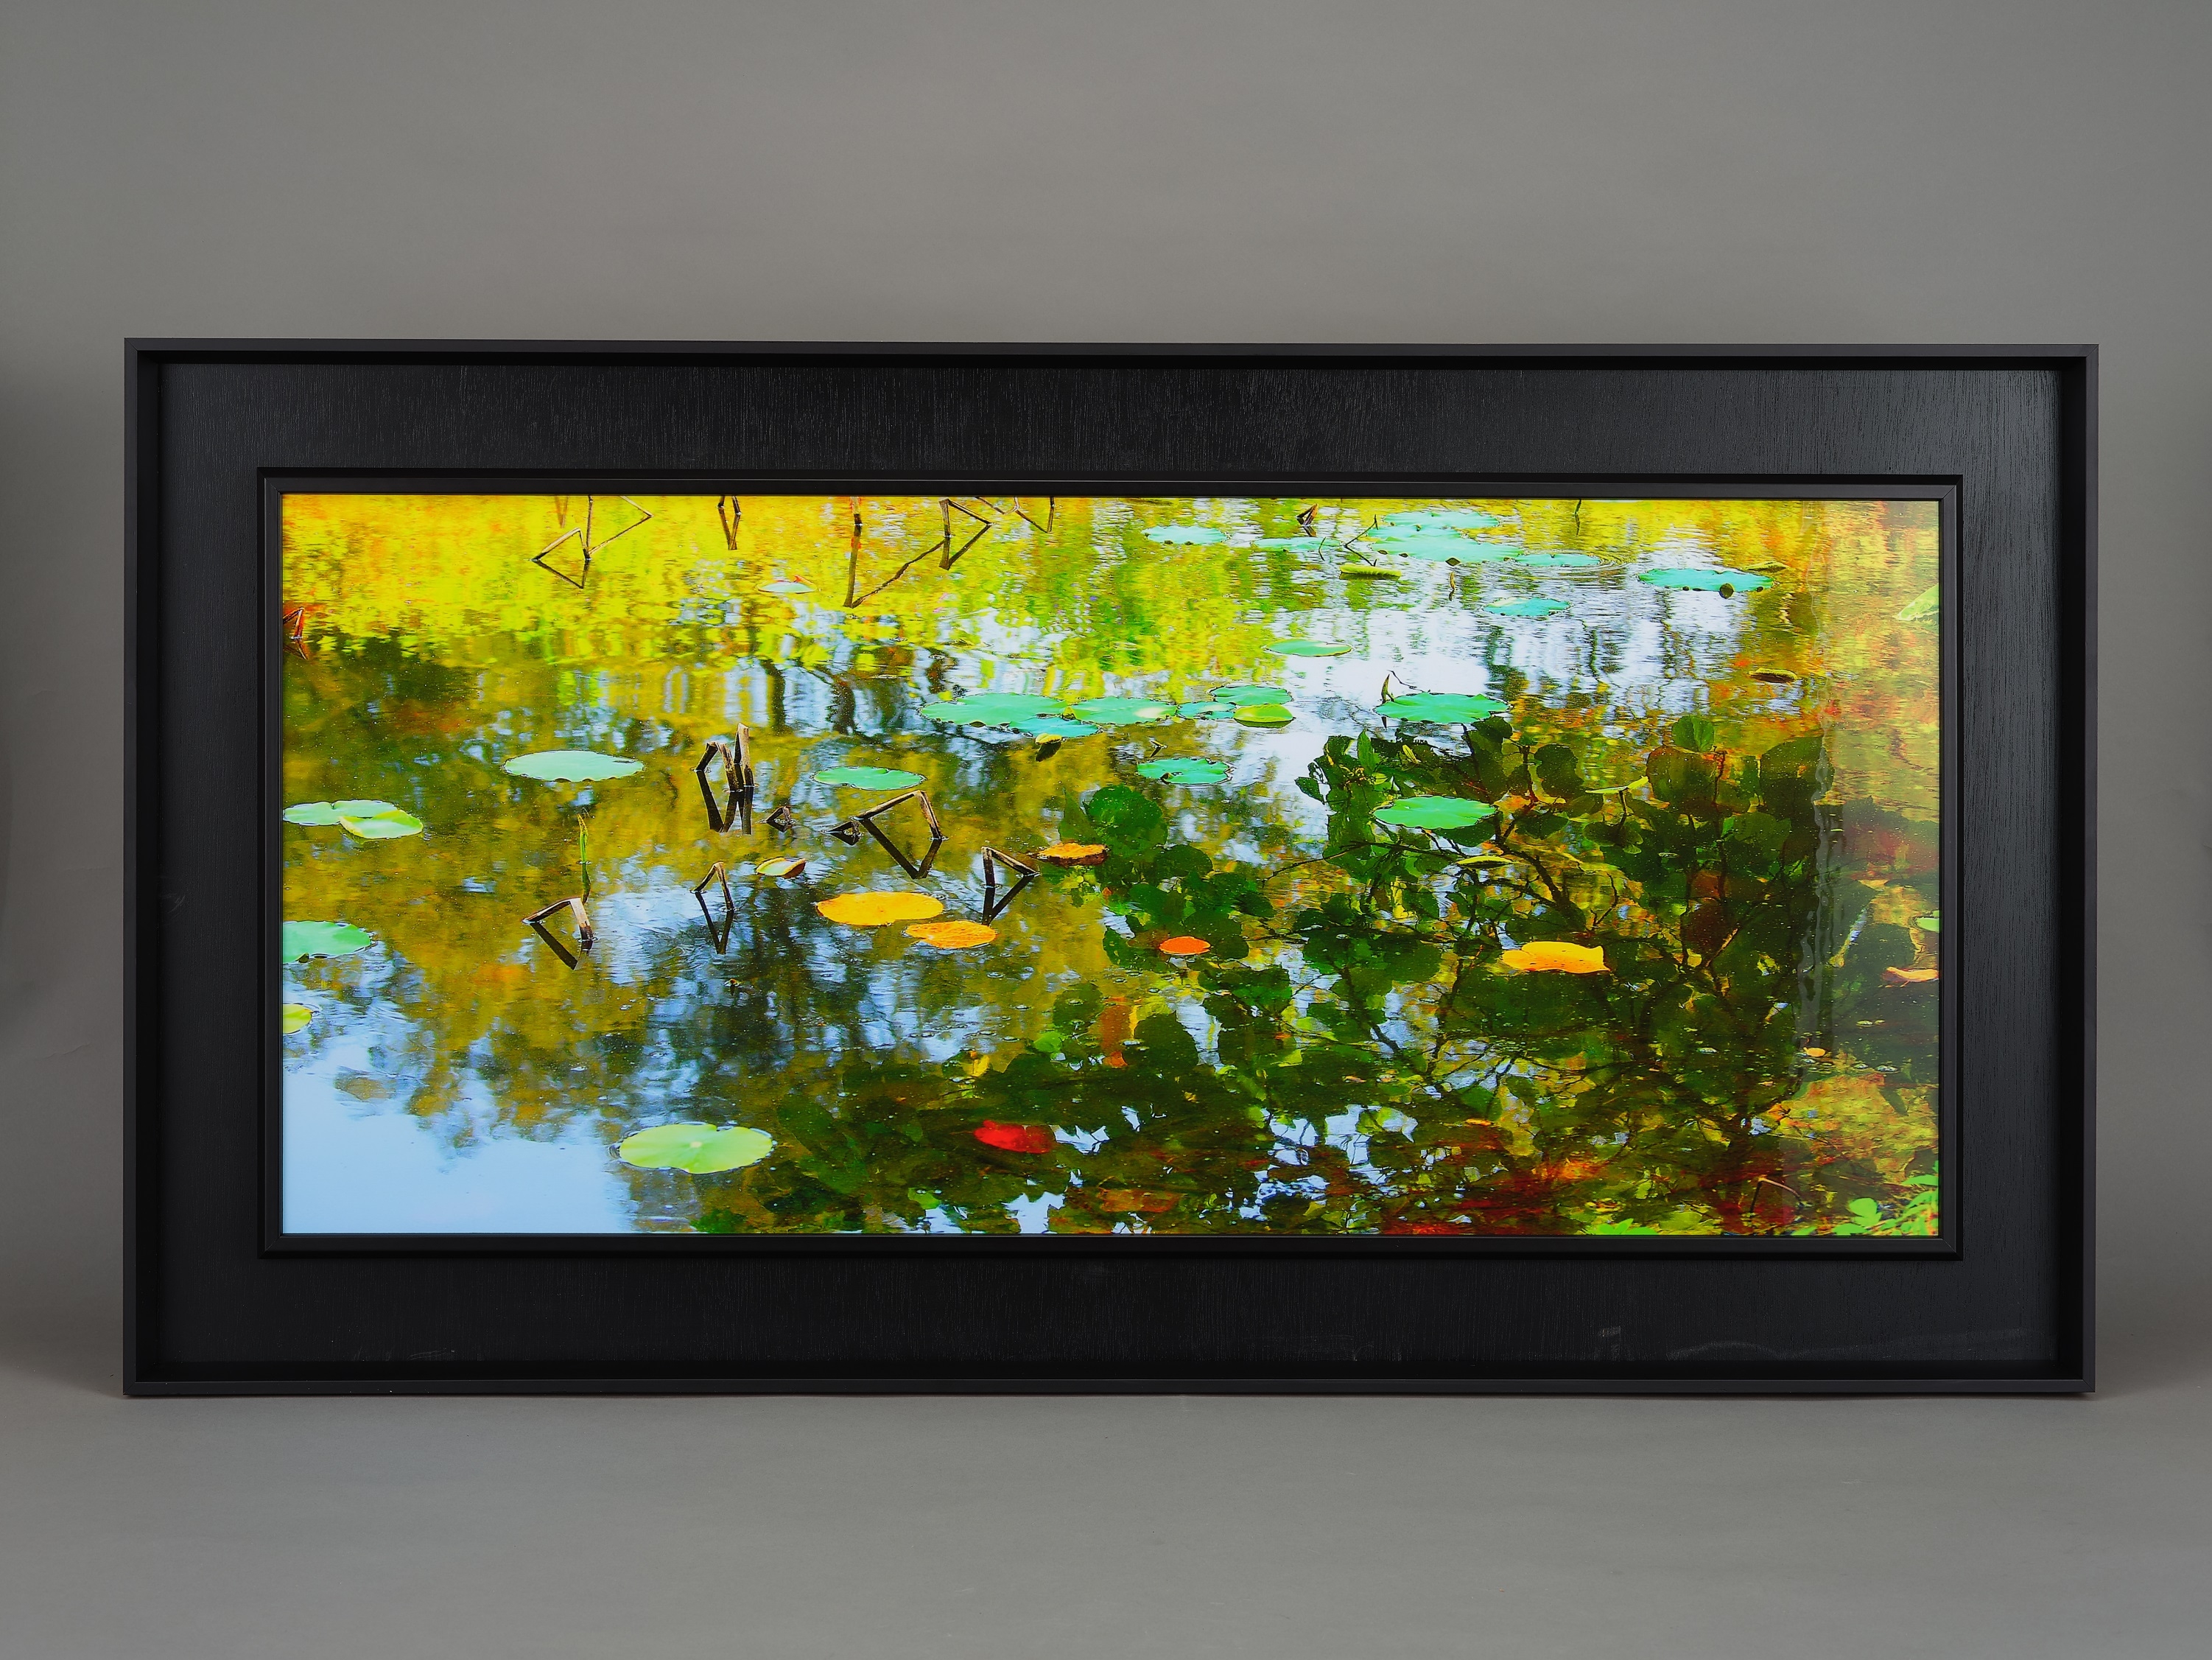 這幅拍攝秋天荷池倒影的作品，聚焦於水池上漂浮的荷葉，與水中的倒影形成一明一暗的顏色對比，使畫面帶有某種抽象造型的元素。